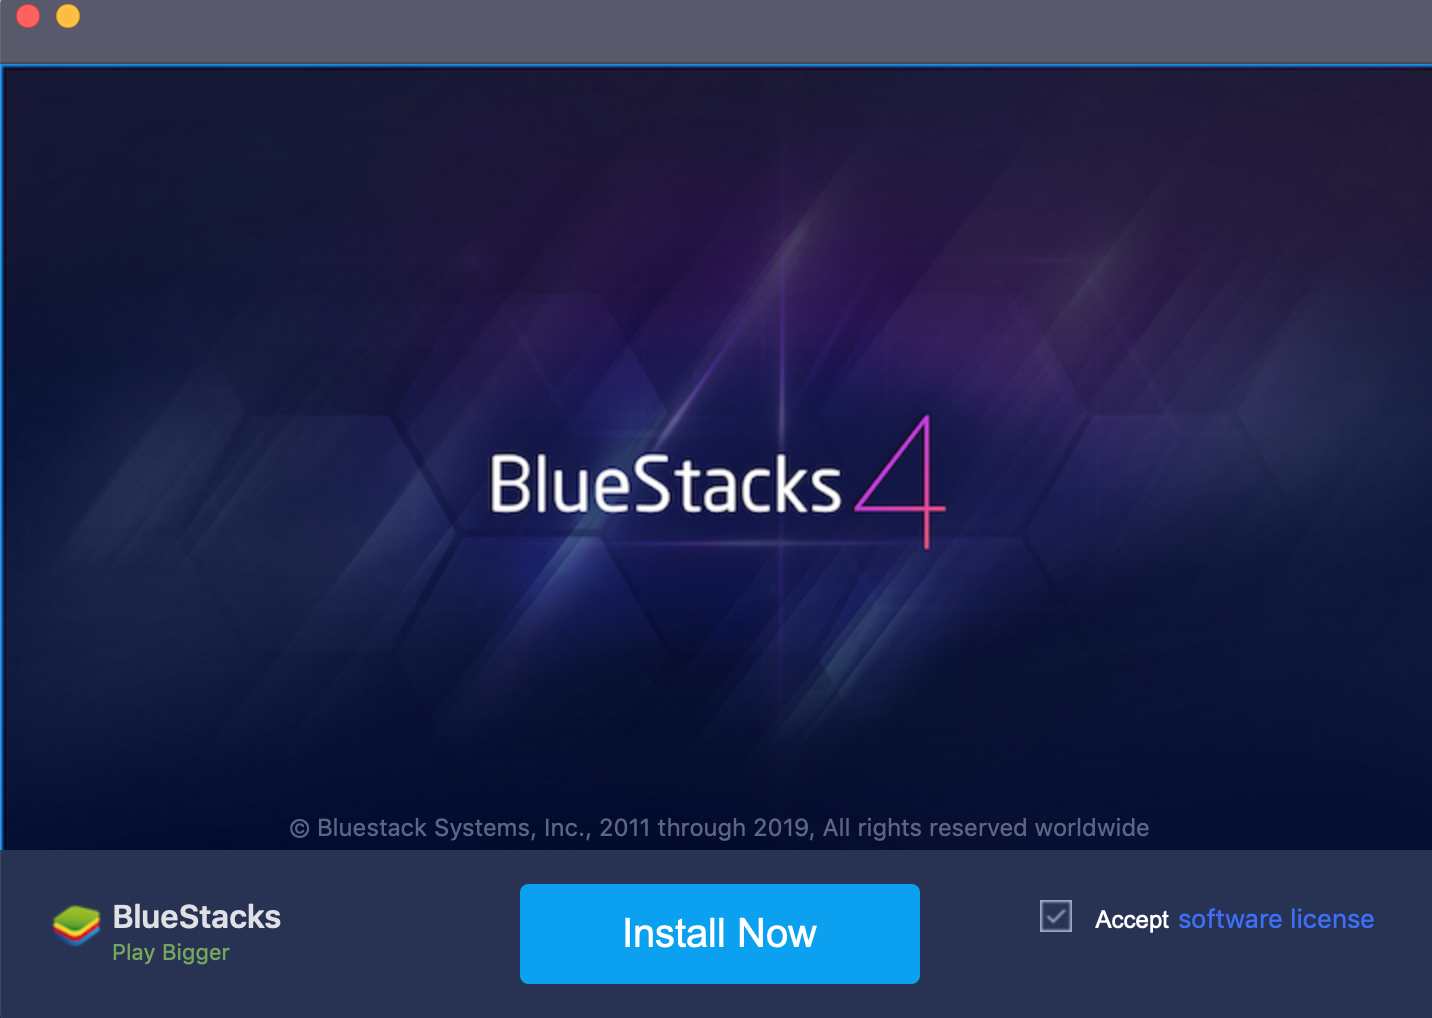 bluestacks for macbook air sierra